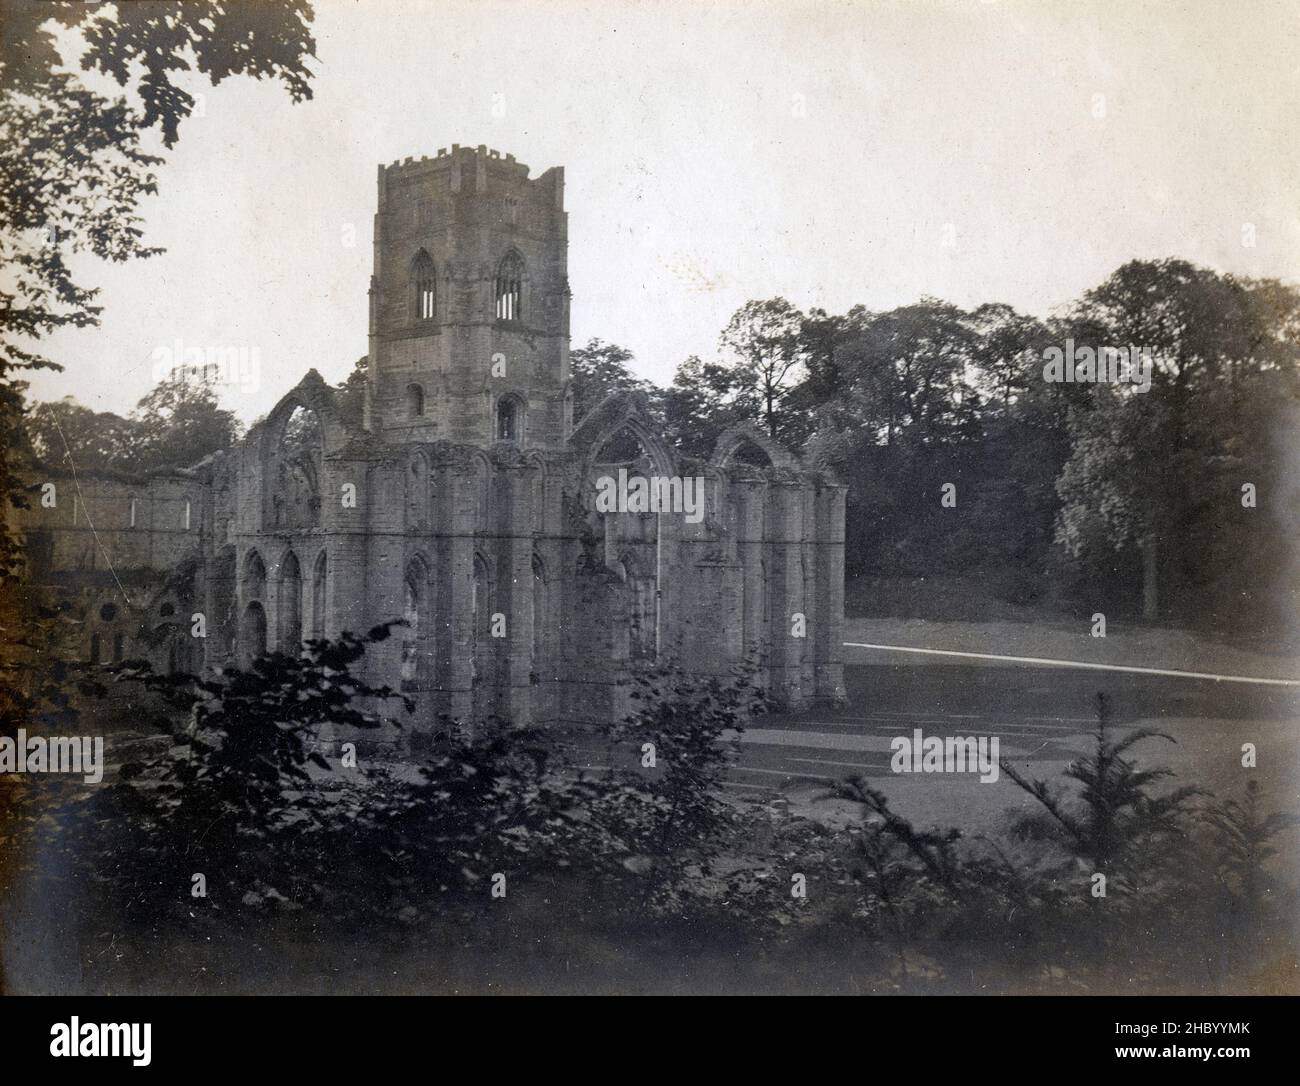 Fotografía antigua c1900, Abadía de las fuentes. La Abadía de fuentes es uno de los monasterios cistercienses más grandes y mejor conservados de Inglaterra. FUENTE: FOTOGRAFÍA ORIGINAL Foto de stock